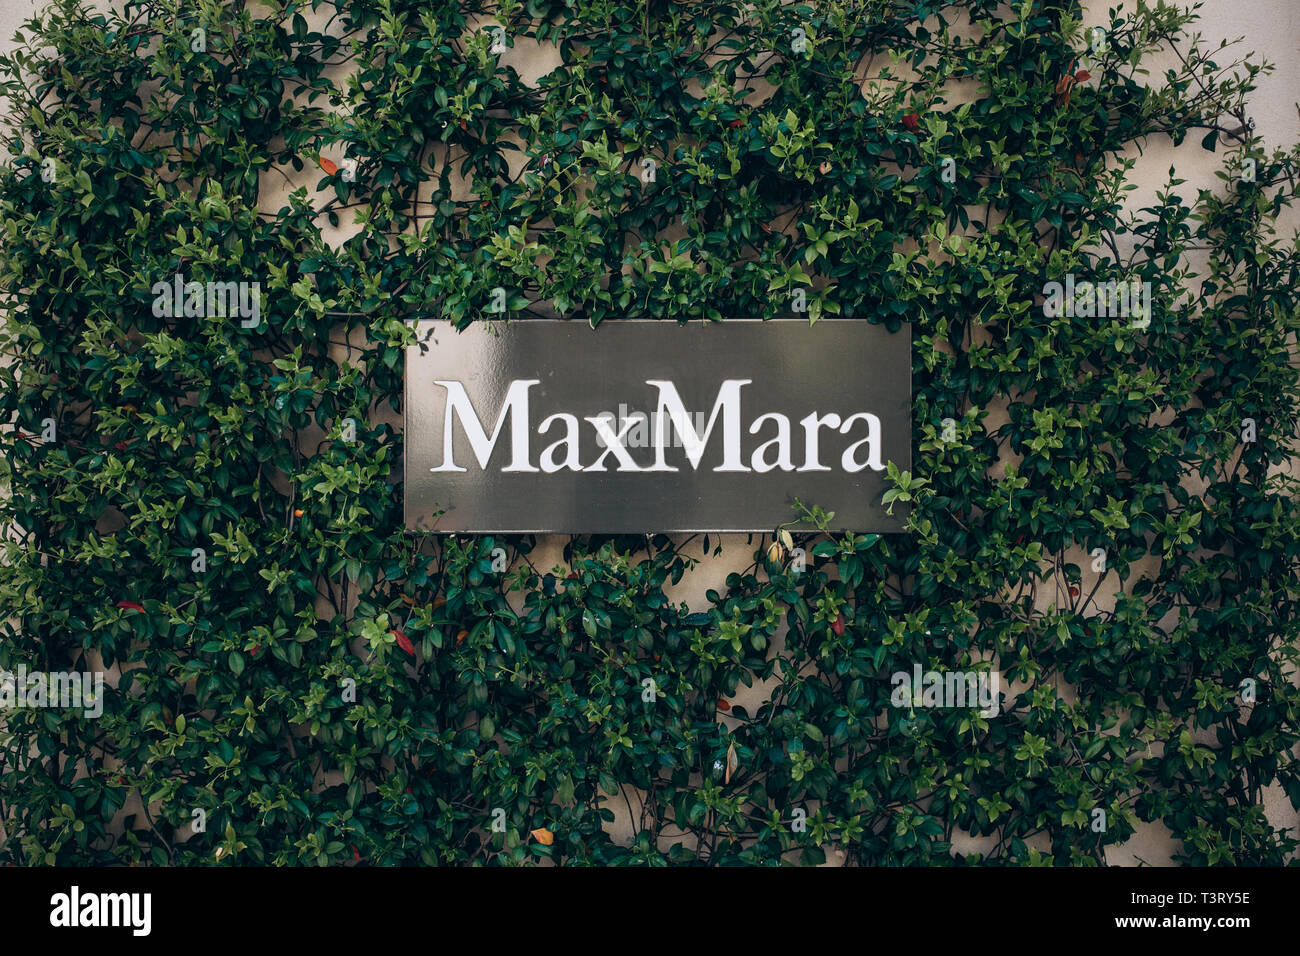 Montenegro, Tivat, Avril 9, 2019 : plaque de rue à l'entrée de la boutique MaxMara. Boutique de mode et de marque italienne de vêtements et parfumerie. Banque D'Images